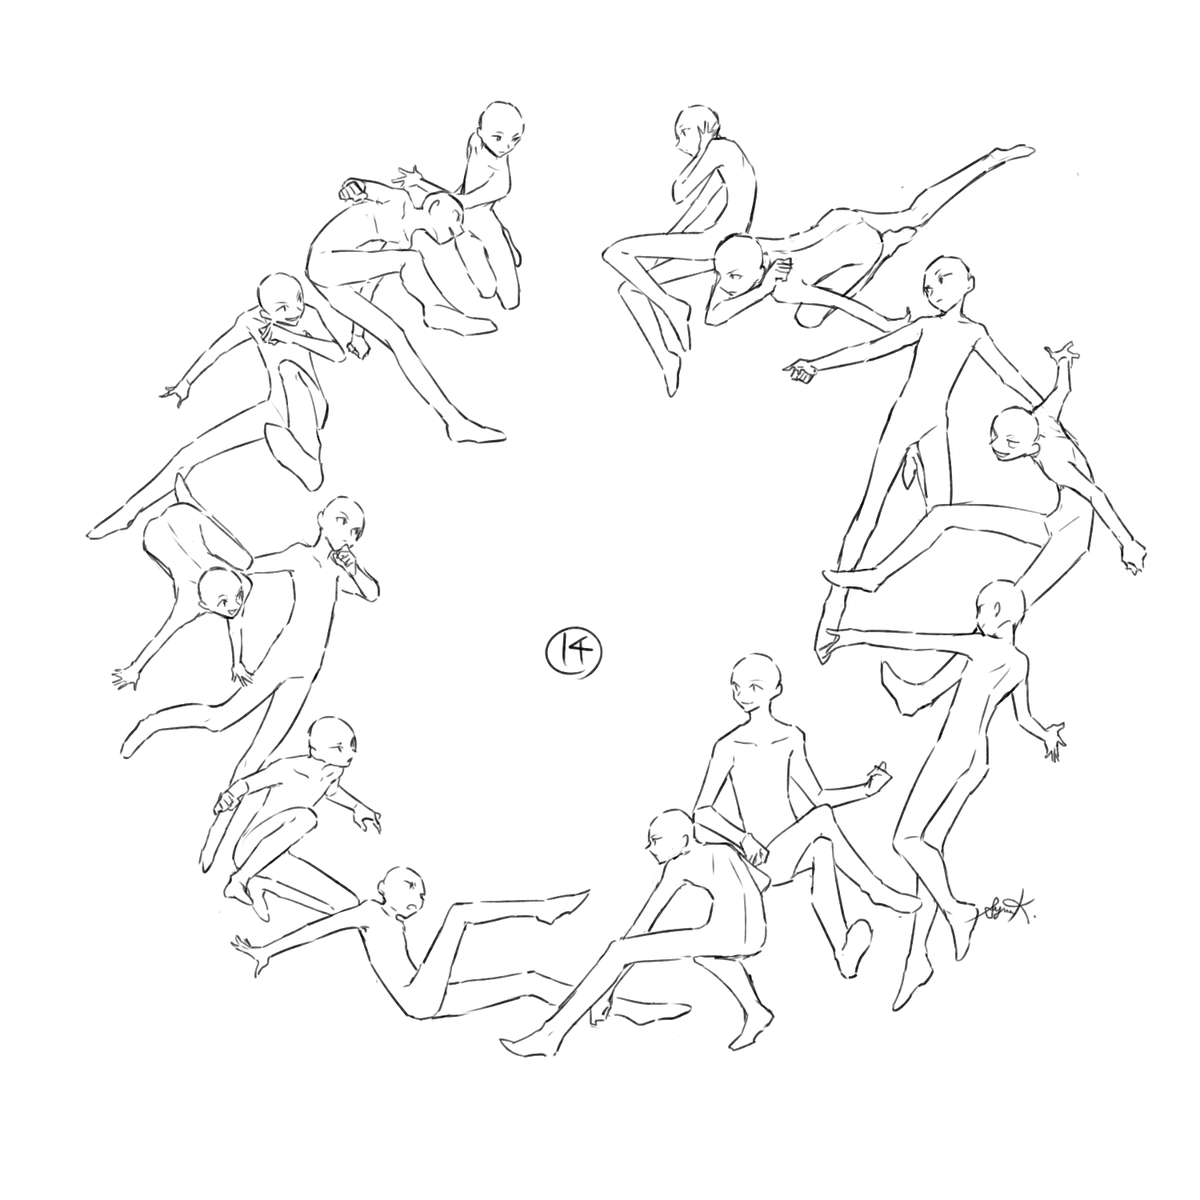 暮宙シュン 環状構図が好きすぎる人の練習 14 15人 いきぬき別パターン3人 4人 大人数描いては少人数でいきぬきする T Co Nluljgfra7